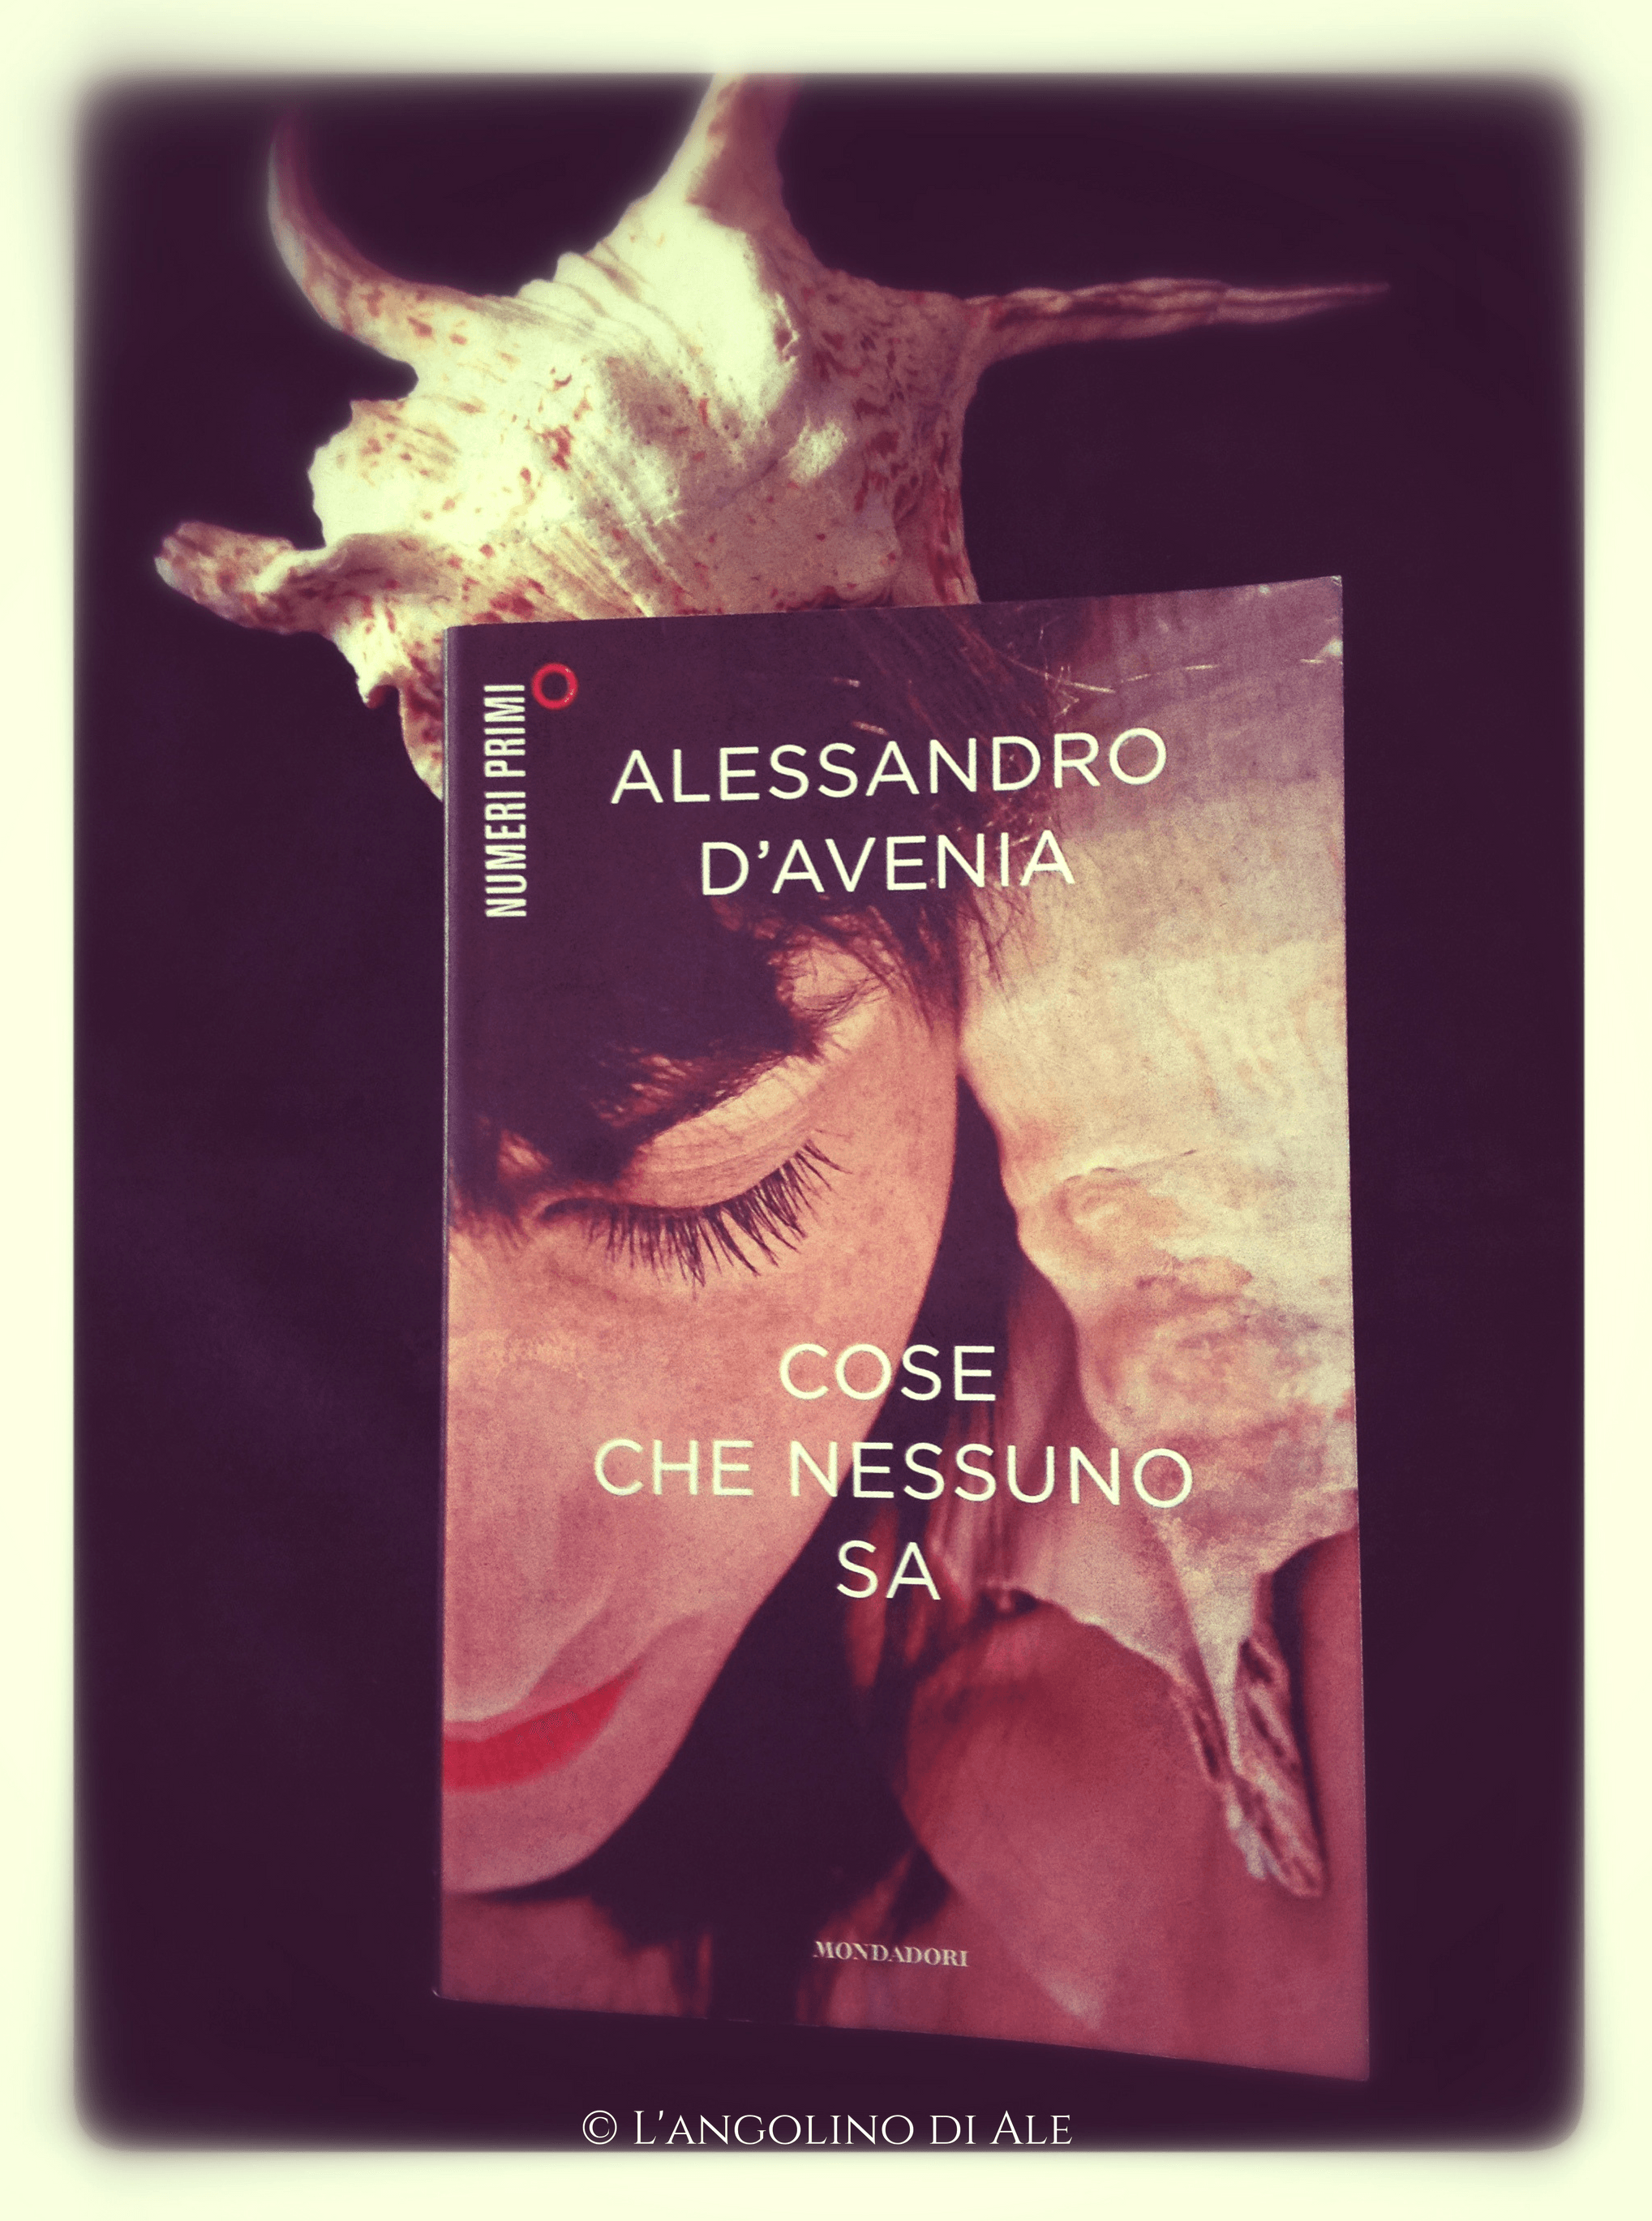 Il nuovo romanzo di Alessandro D'Avenia